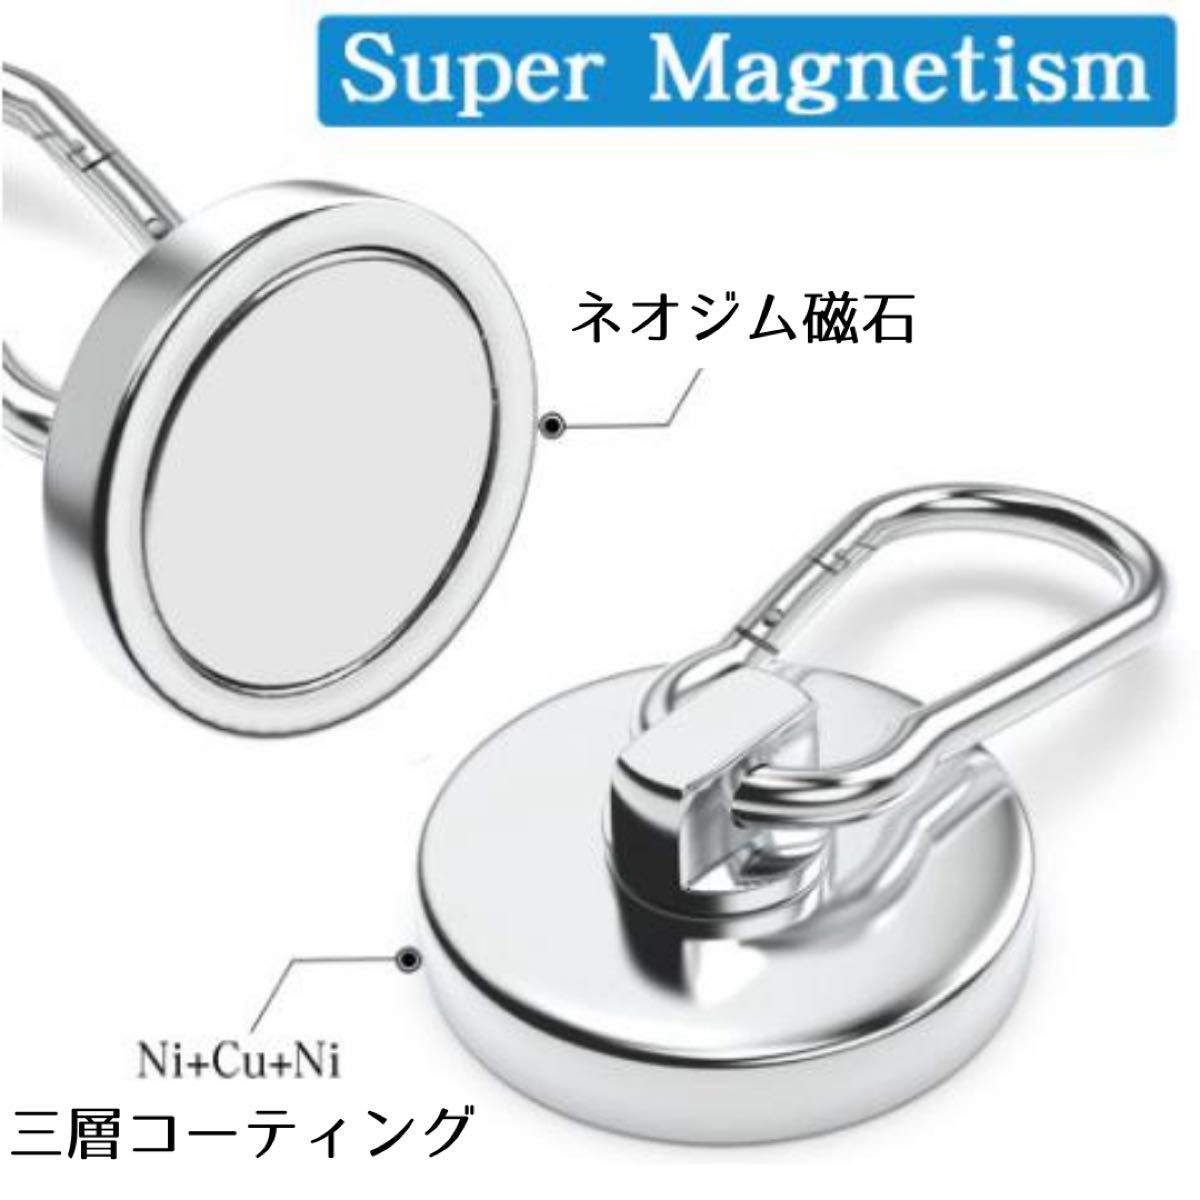 マグネットフック マグネット カラビナ 磁石 強力 ネオジム磁石 超強力 防錆 ステンレス